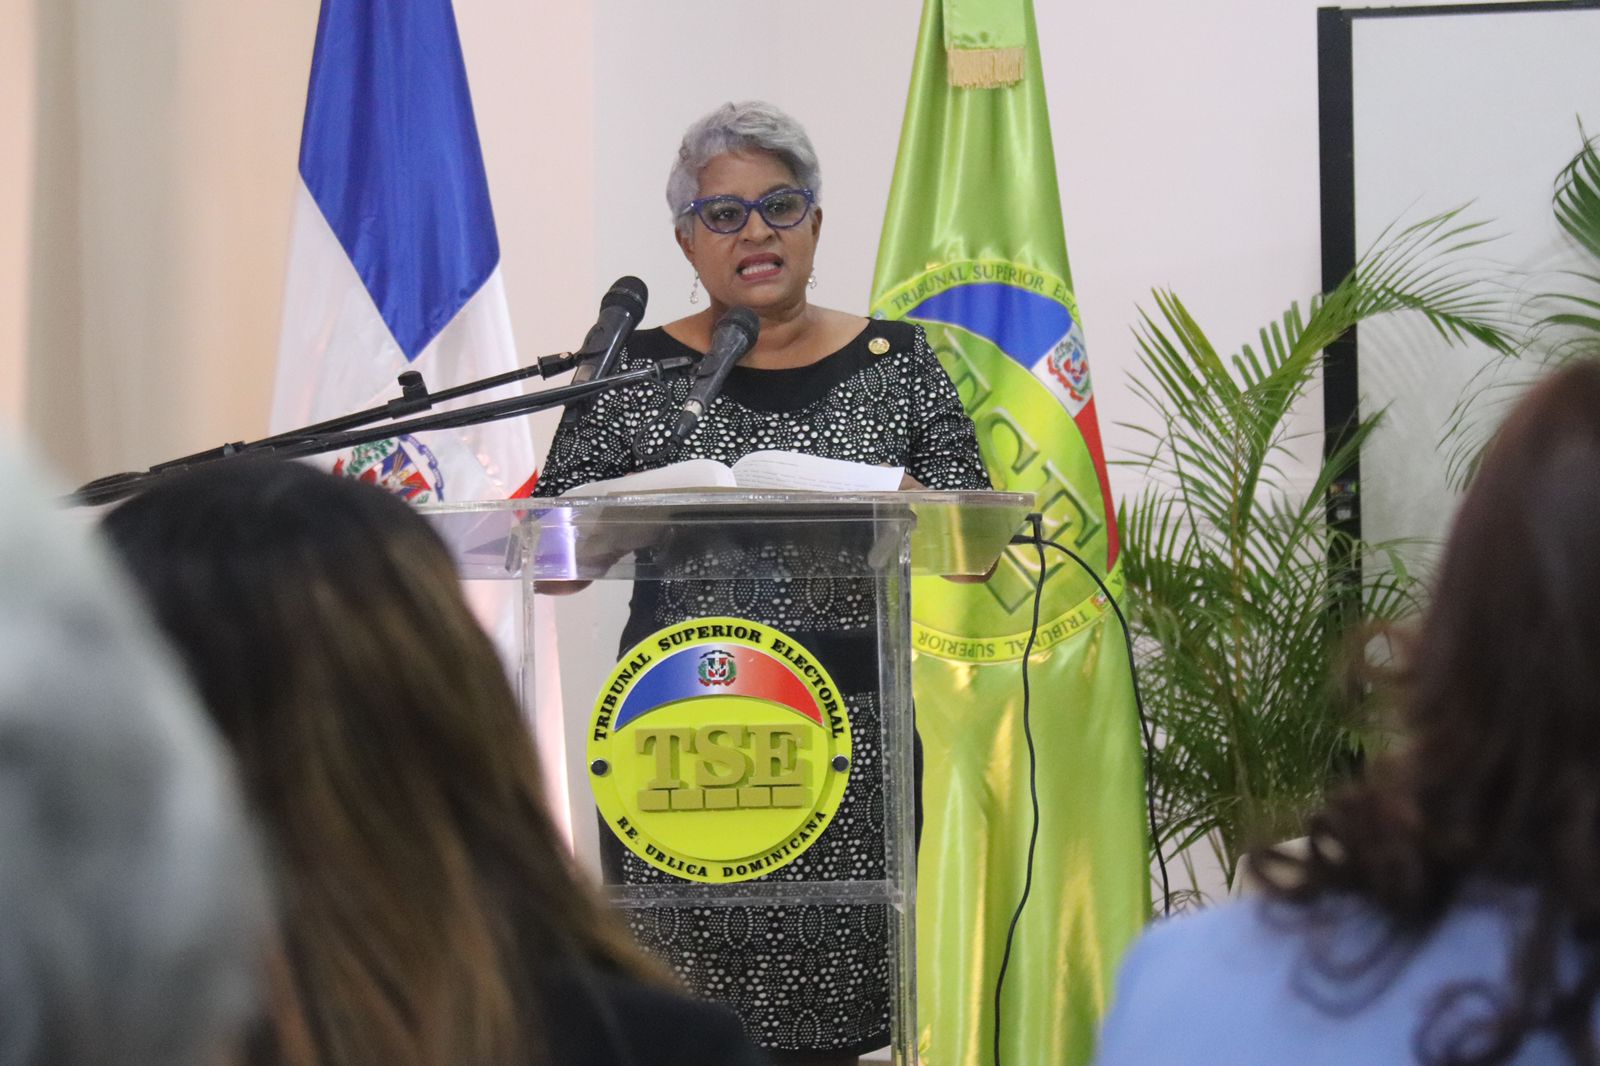 Presidente del TSE plantea seguir recuperando la memoria histórica de la mujer dominicana, como acción renovadora y transformadora de la sociedad dominicana.